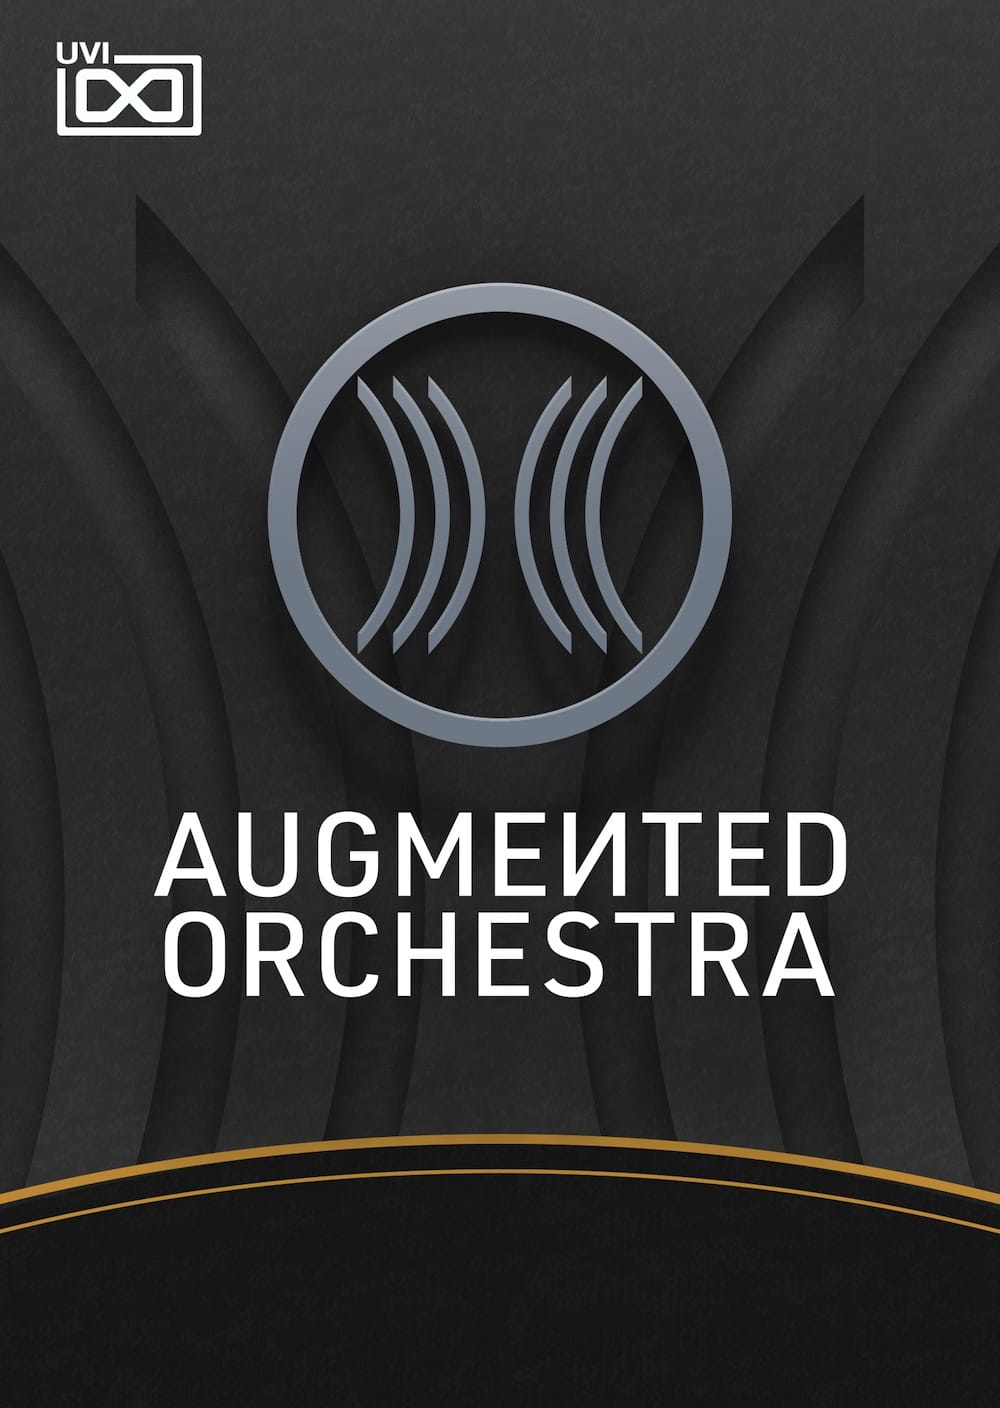 UVI、オーケストラ音源「Augmented Orchestra」をリリース